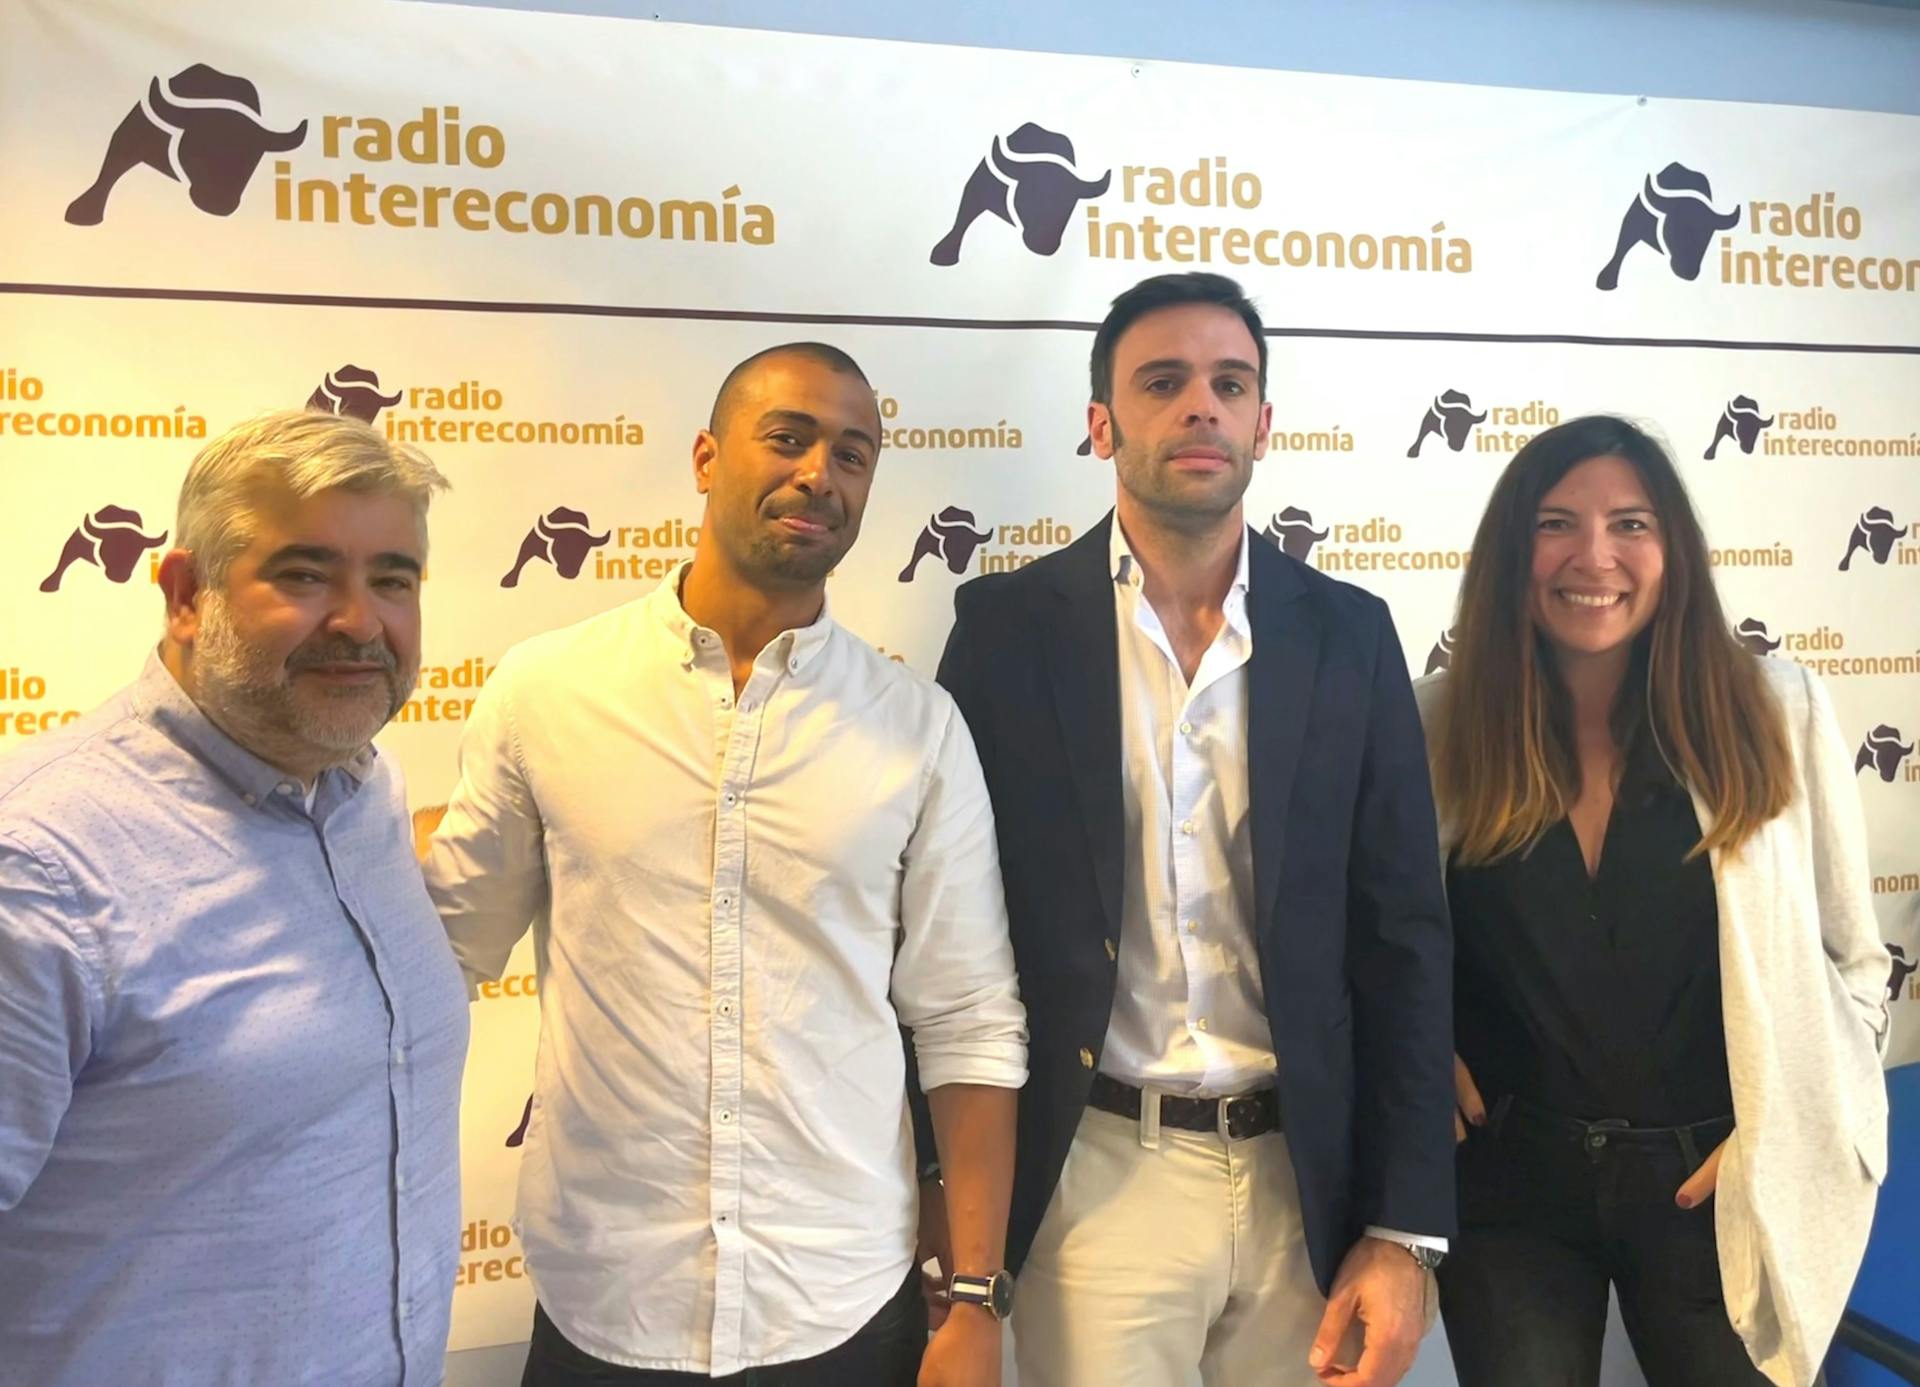 Juan Besari y Álvaro Latorre presentan Exponentia en Intereconomía Radio Valencia